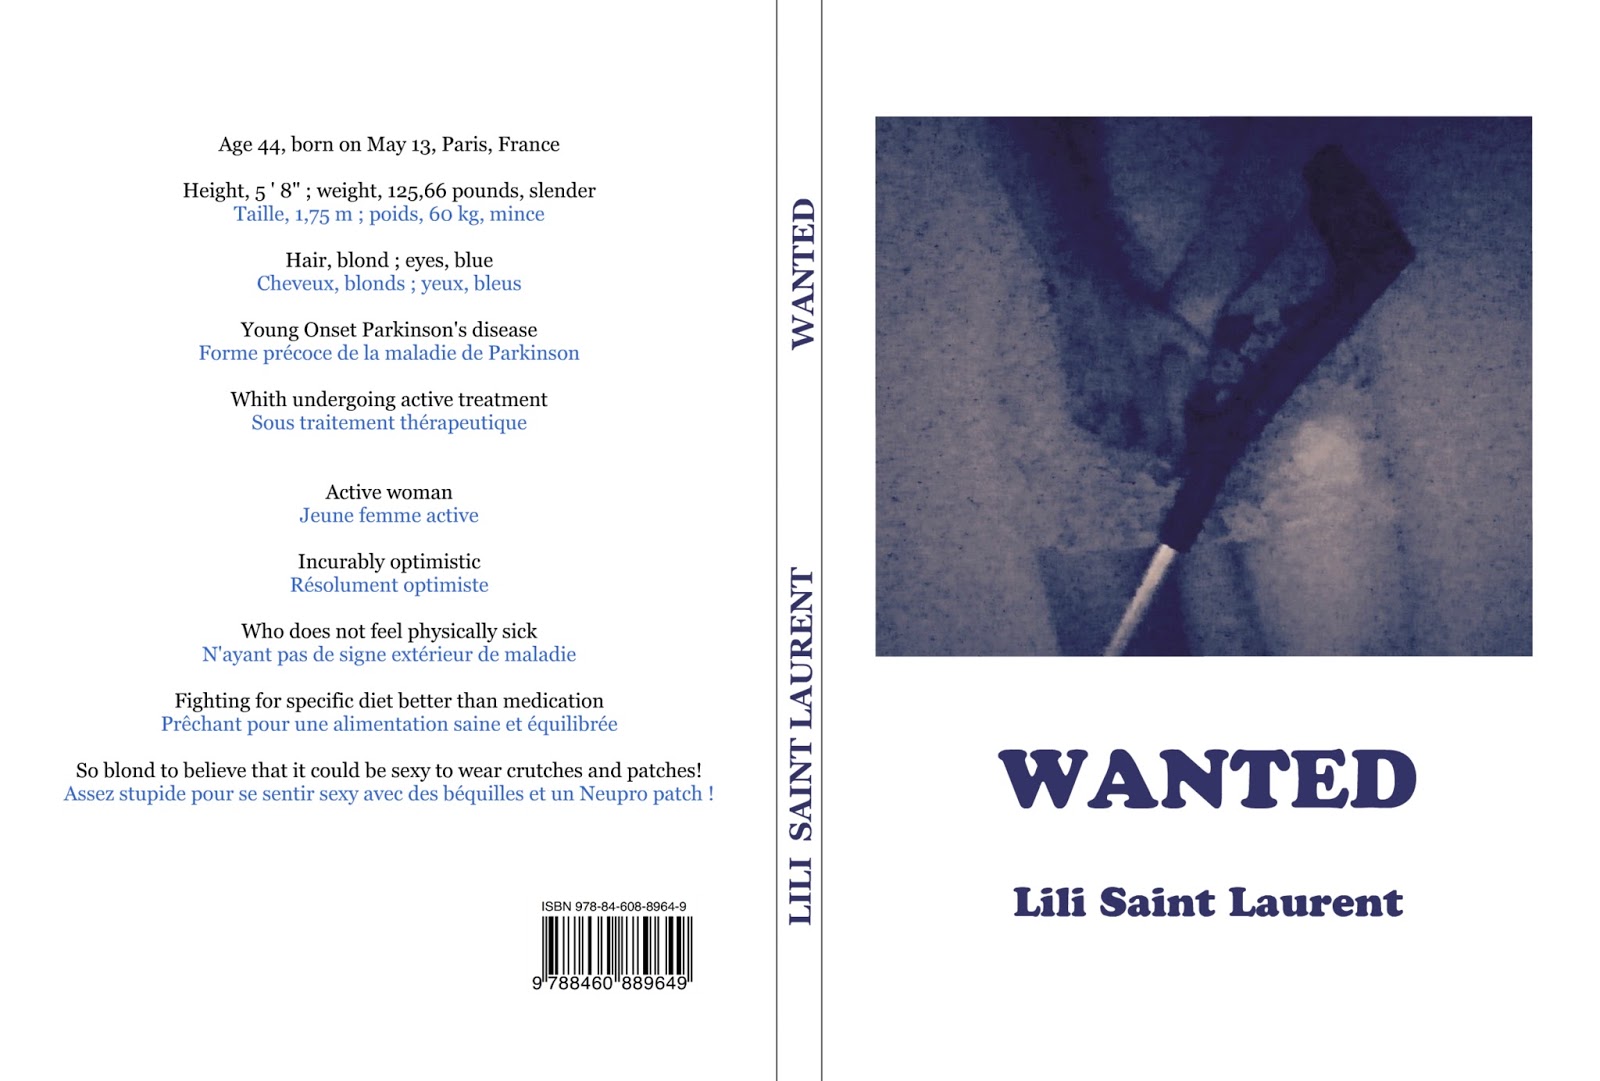 Wanted - Recueil de poésie de Lili Saint Laurent